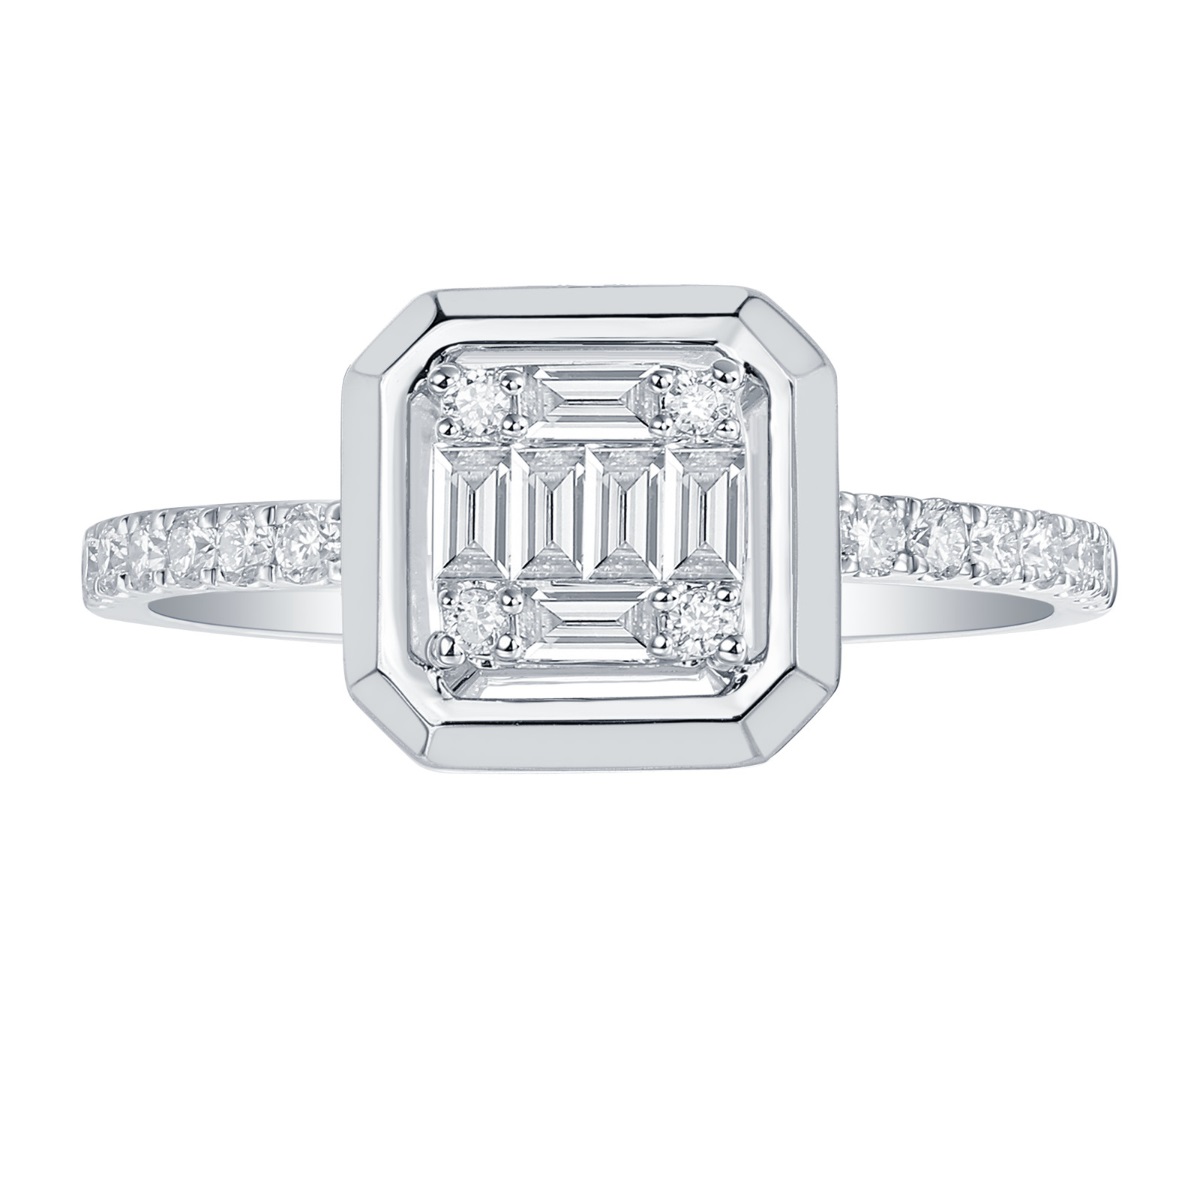 R36566WHT – 18K White Gold  Diamond Ring, 0.42 TCW